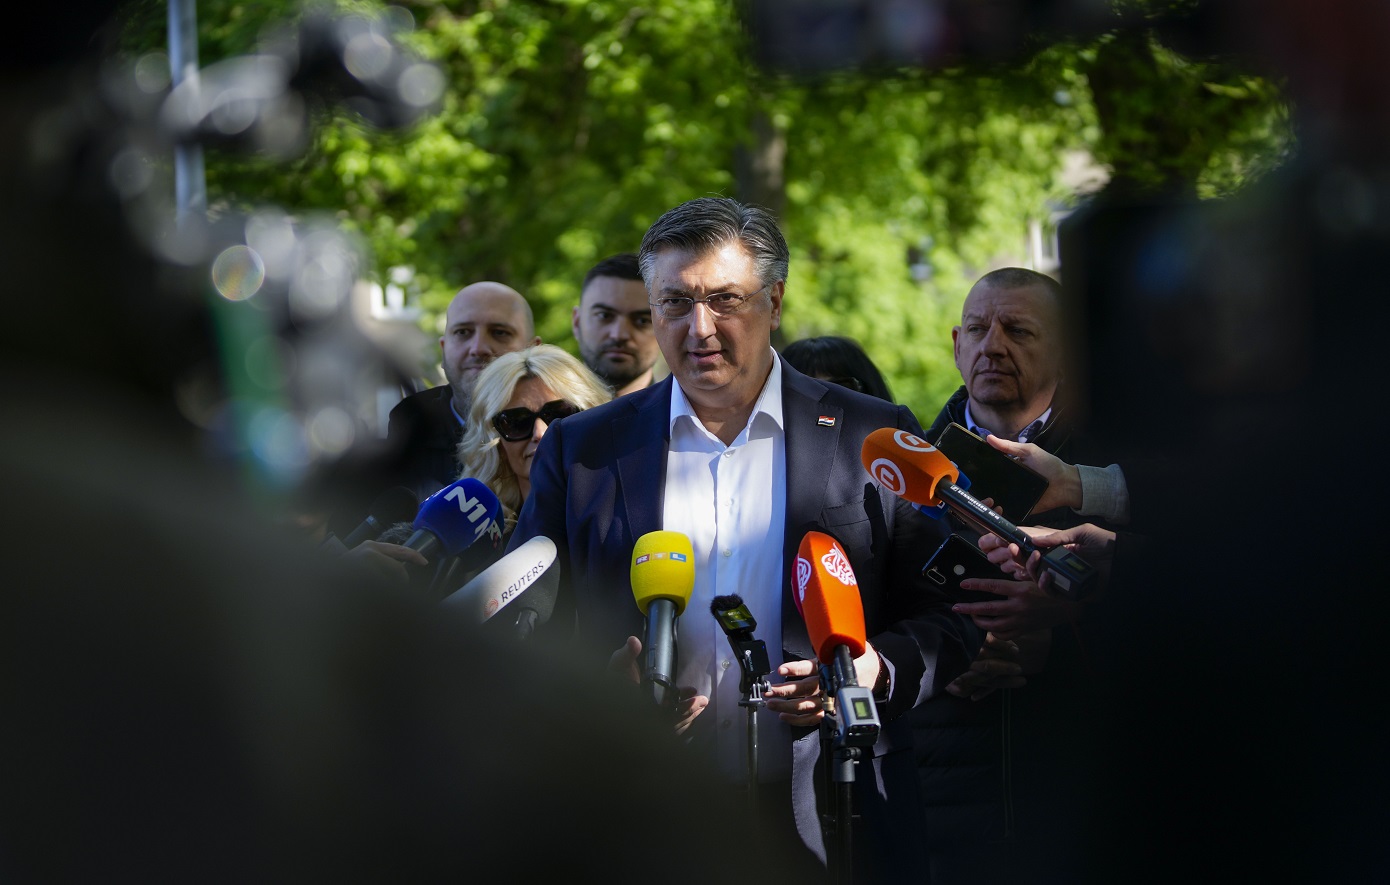 Εκλογές στην Κροατία: Πρωτιά χωρίς αυτοδυναμία για το κόμμα του Πλένκοβιτς δείχνουν τα exit polls